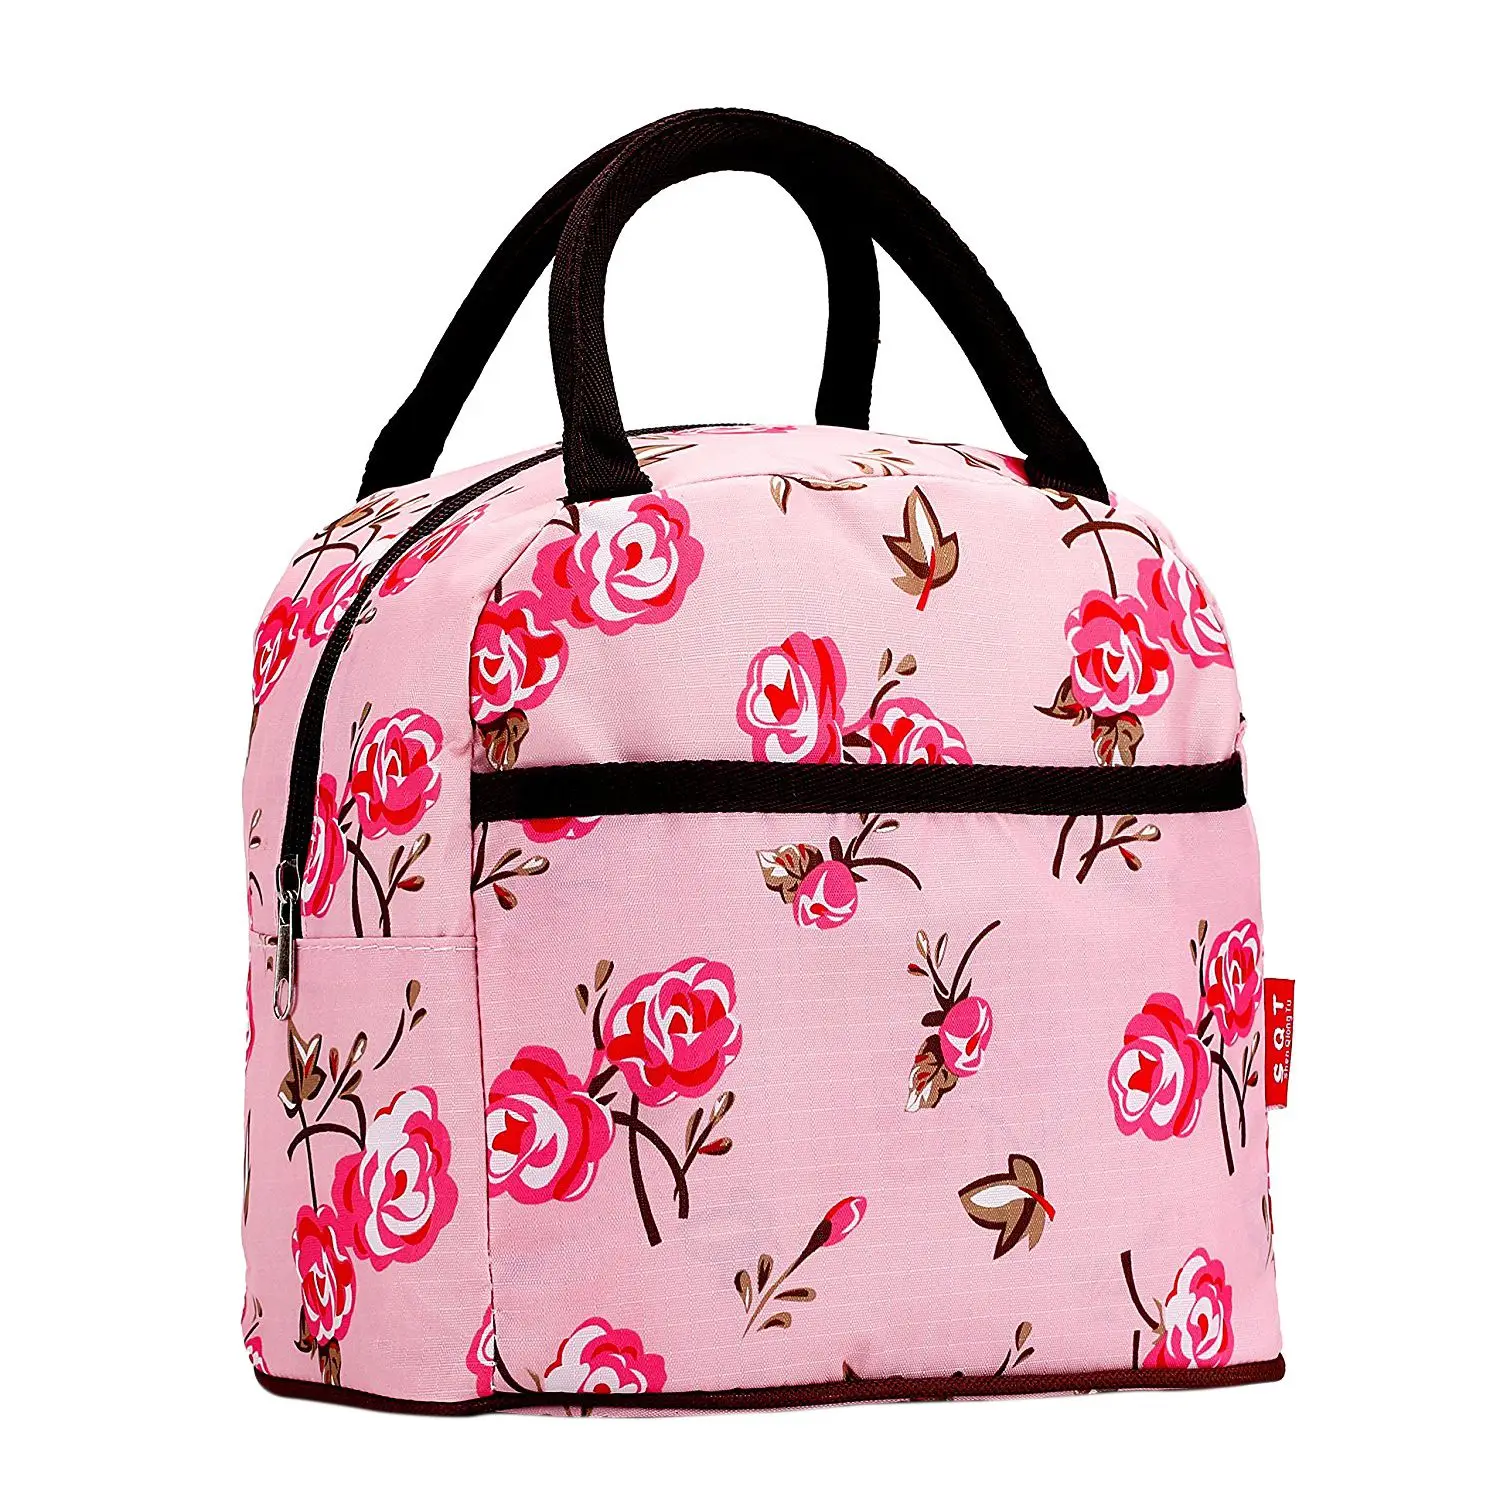 Розовый стиль полиэстер Ланч-бокс посылка магазин сумка кошелек для женщин девушек